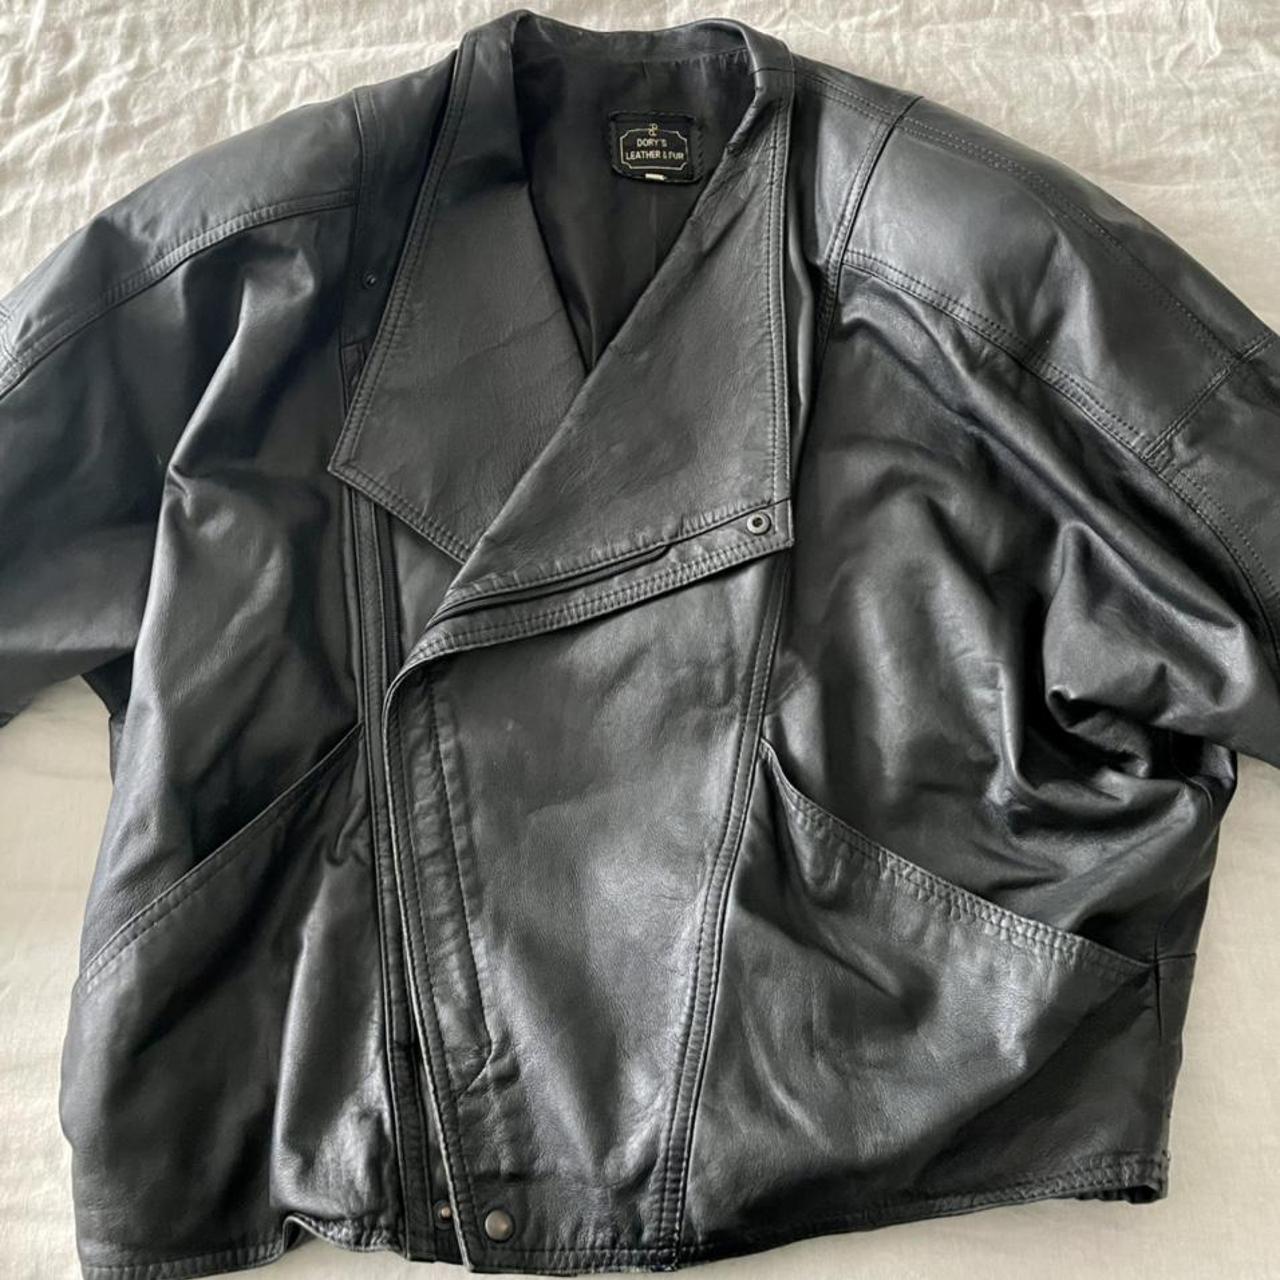 Oversized leather biker jacket with shoulder pads,... - Depop